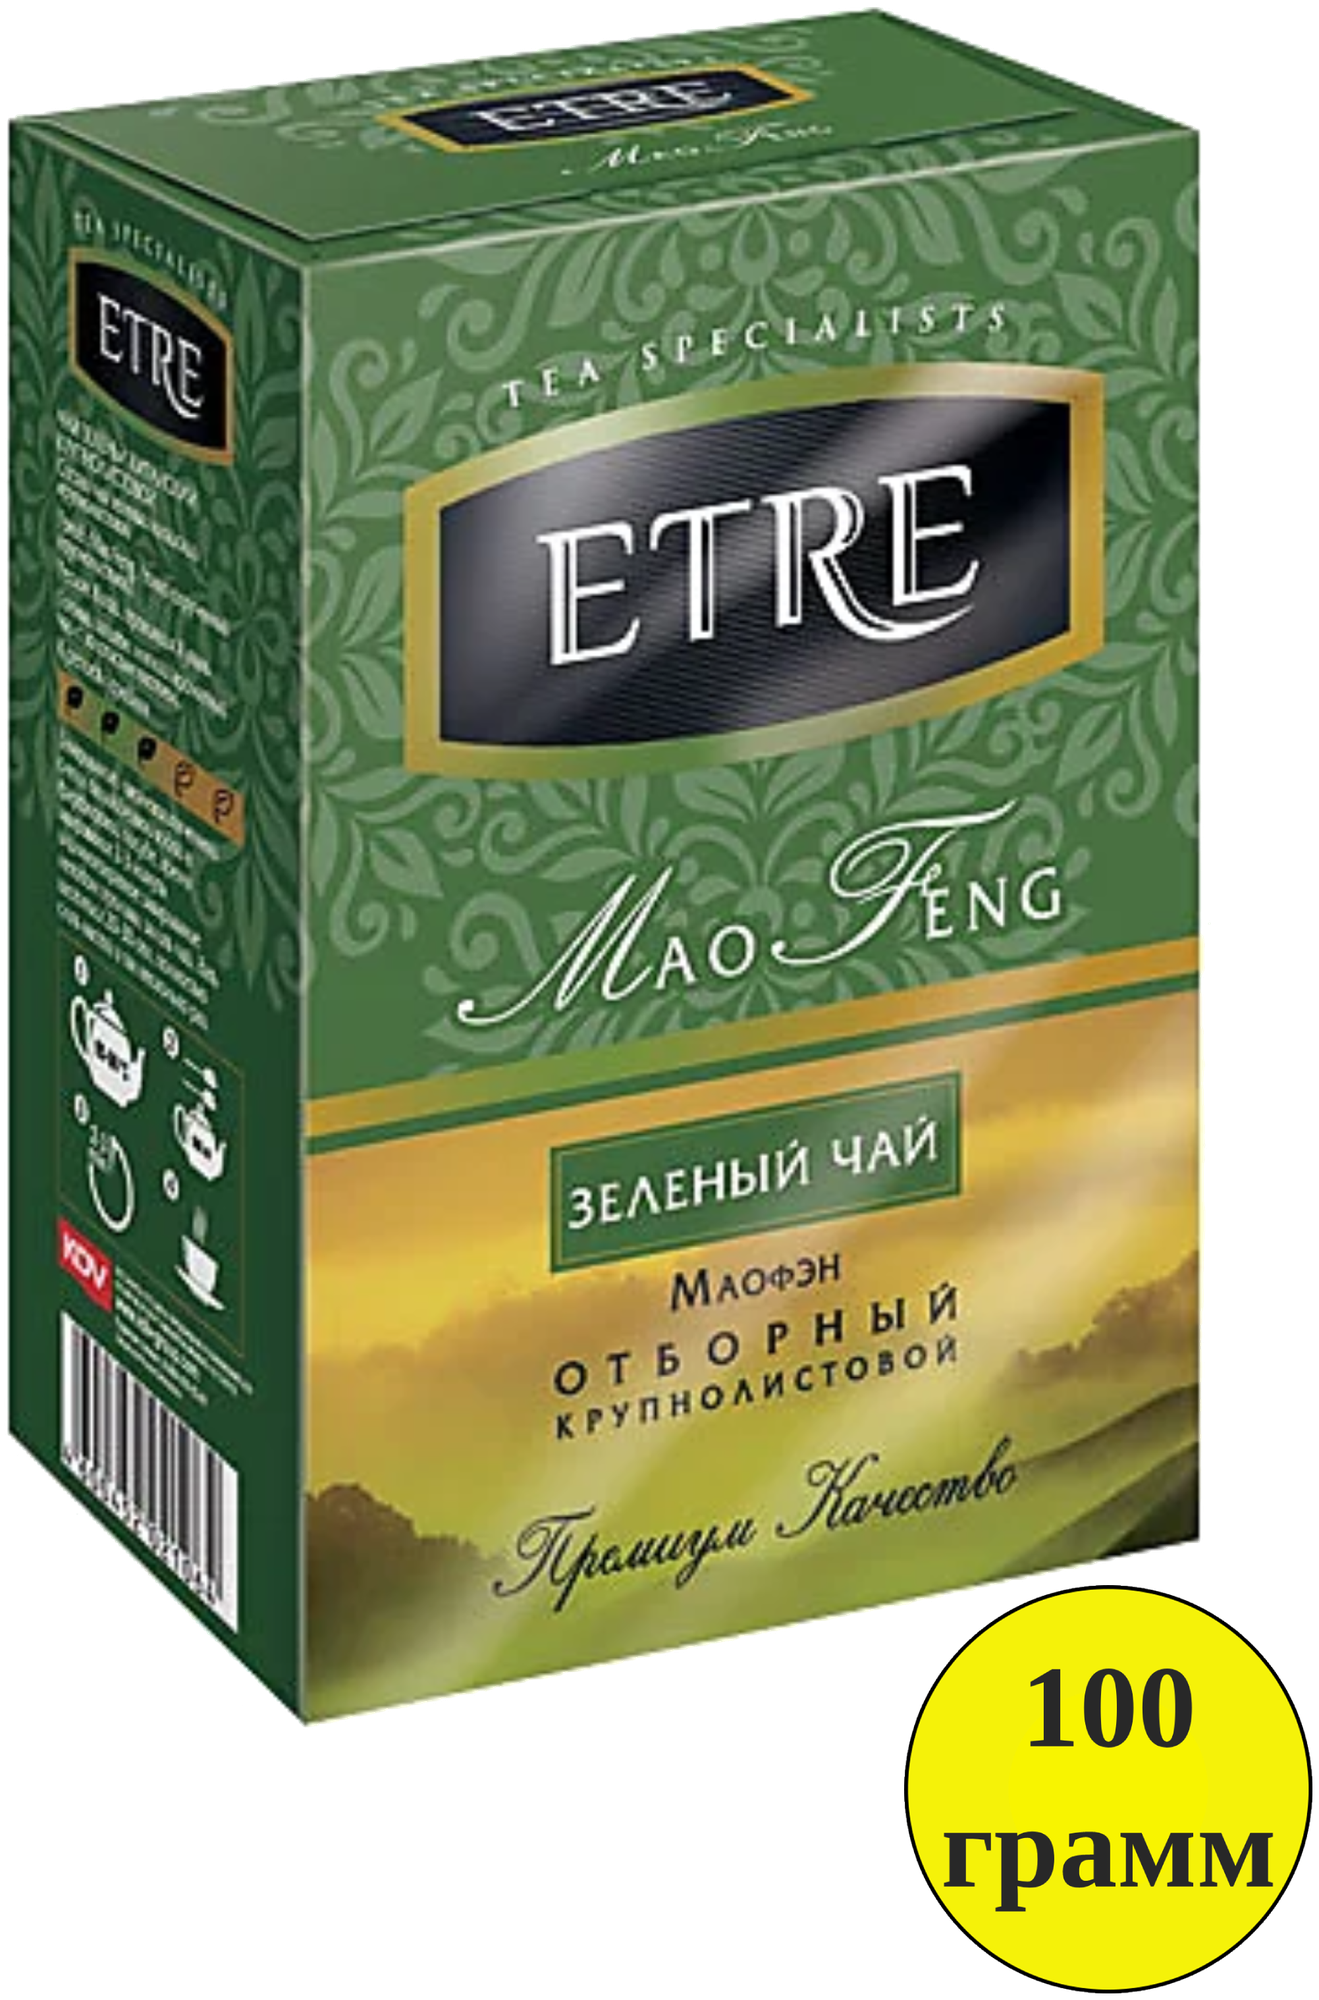 Чай KDV ETRE mao Feng зеленый крупнолистовой, 100 г